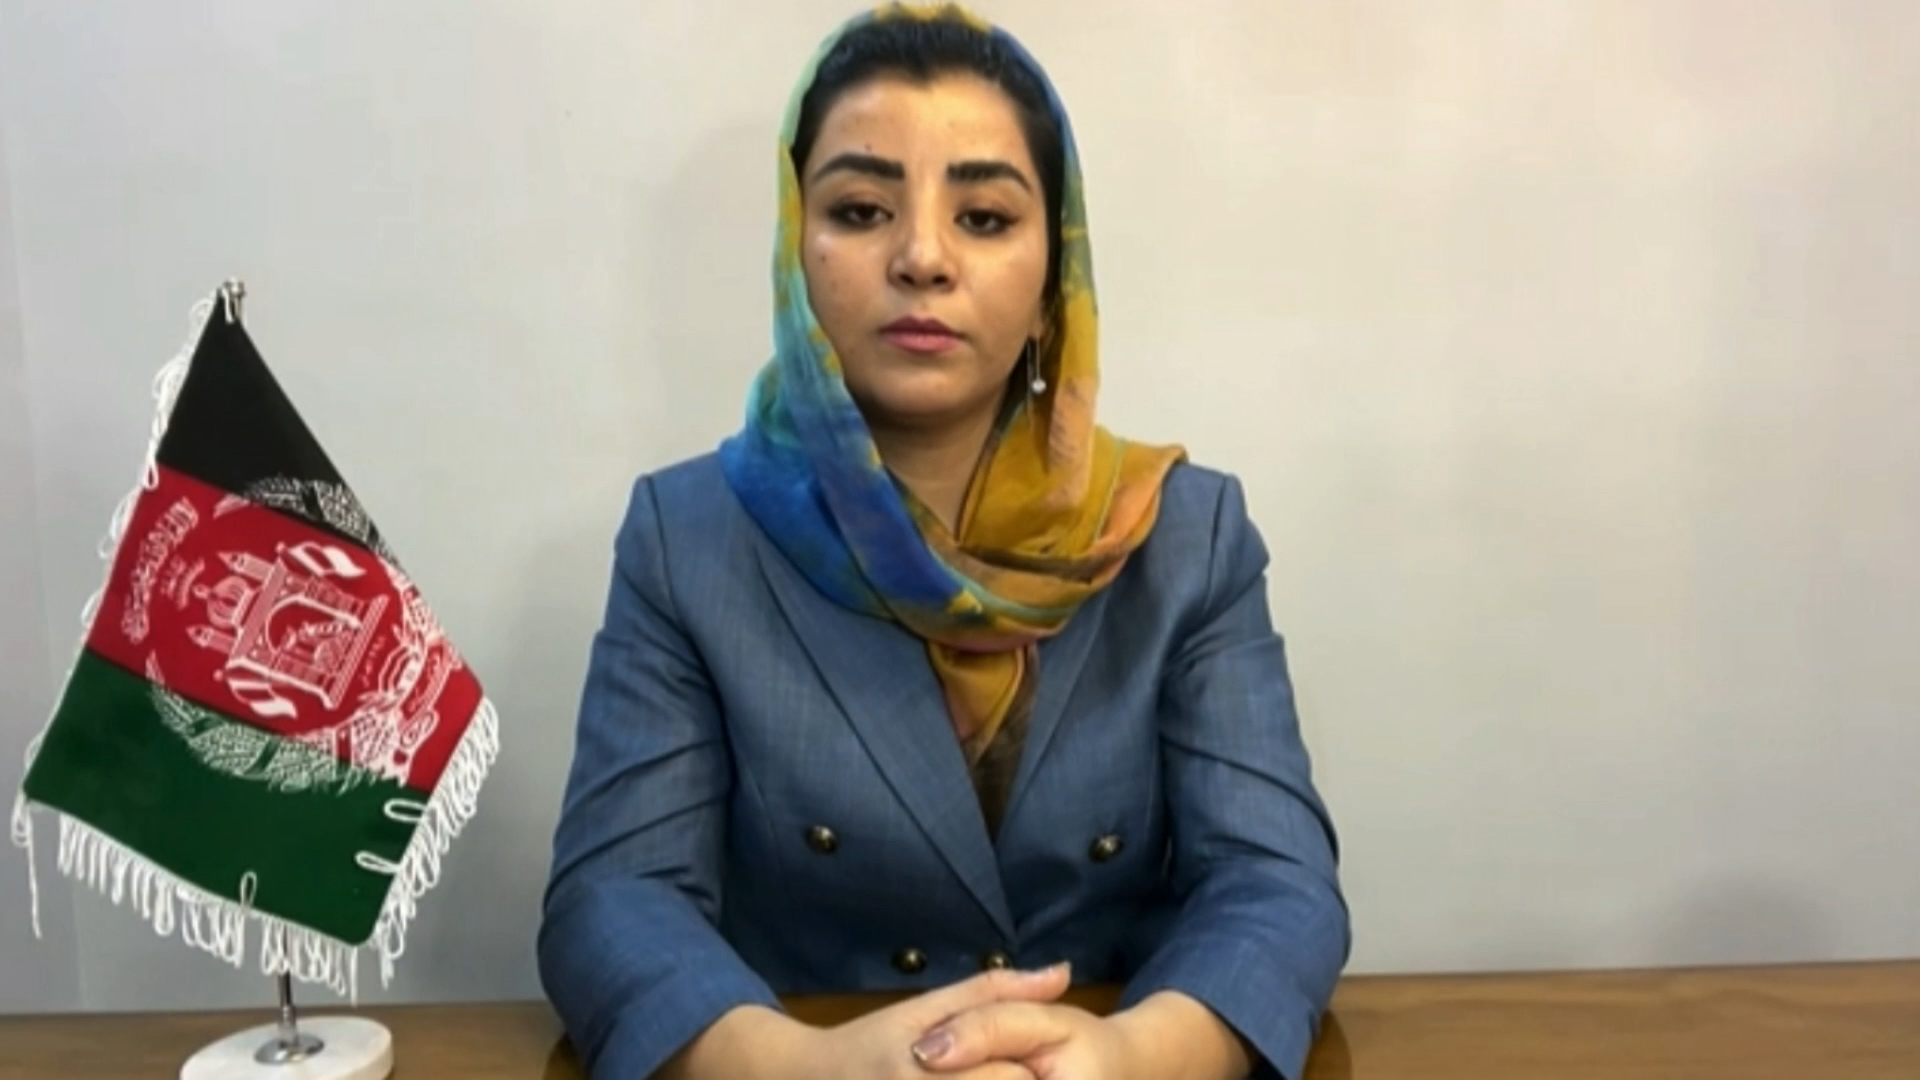  Afganii nu vor tolera excluderea femeilor din societate, afirmă o membră a Parlamentului din Afganistan